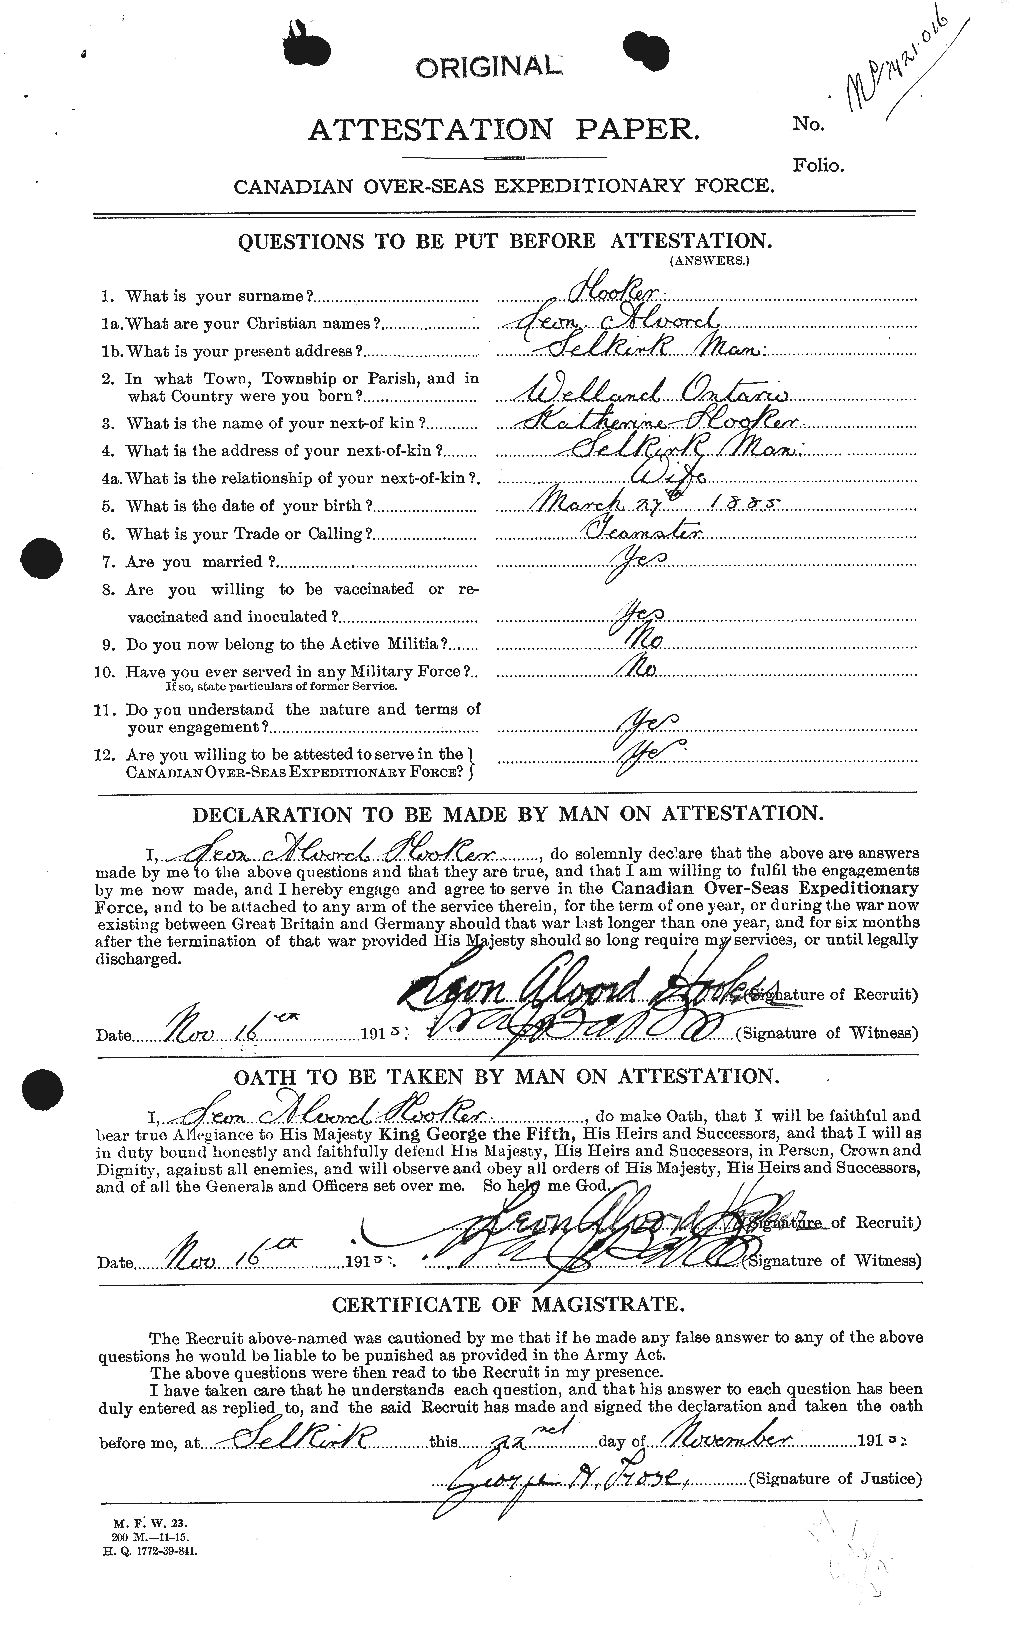 Dossiers du Personnel de la Première Guerre mondiale - CEC 398184a